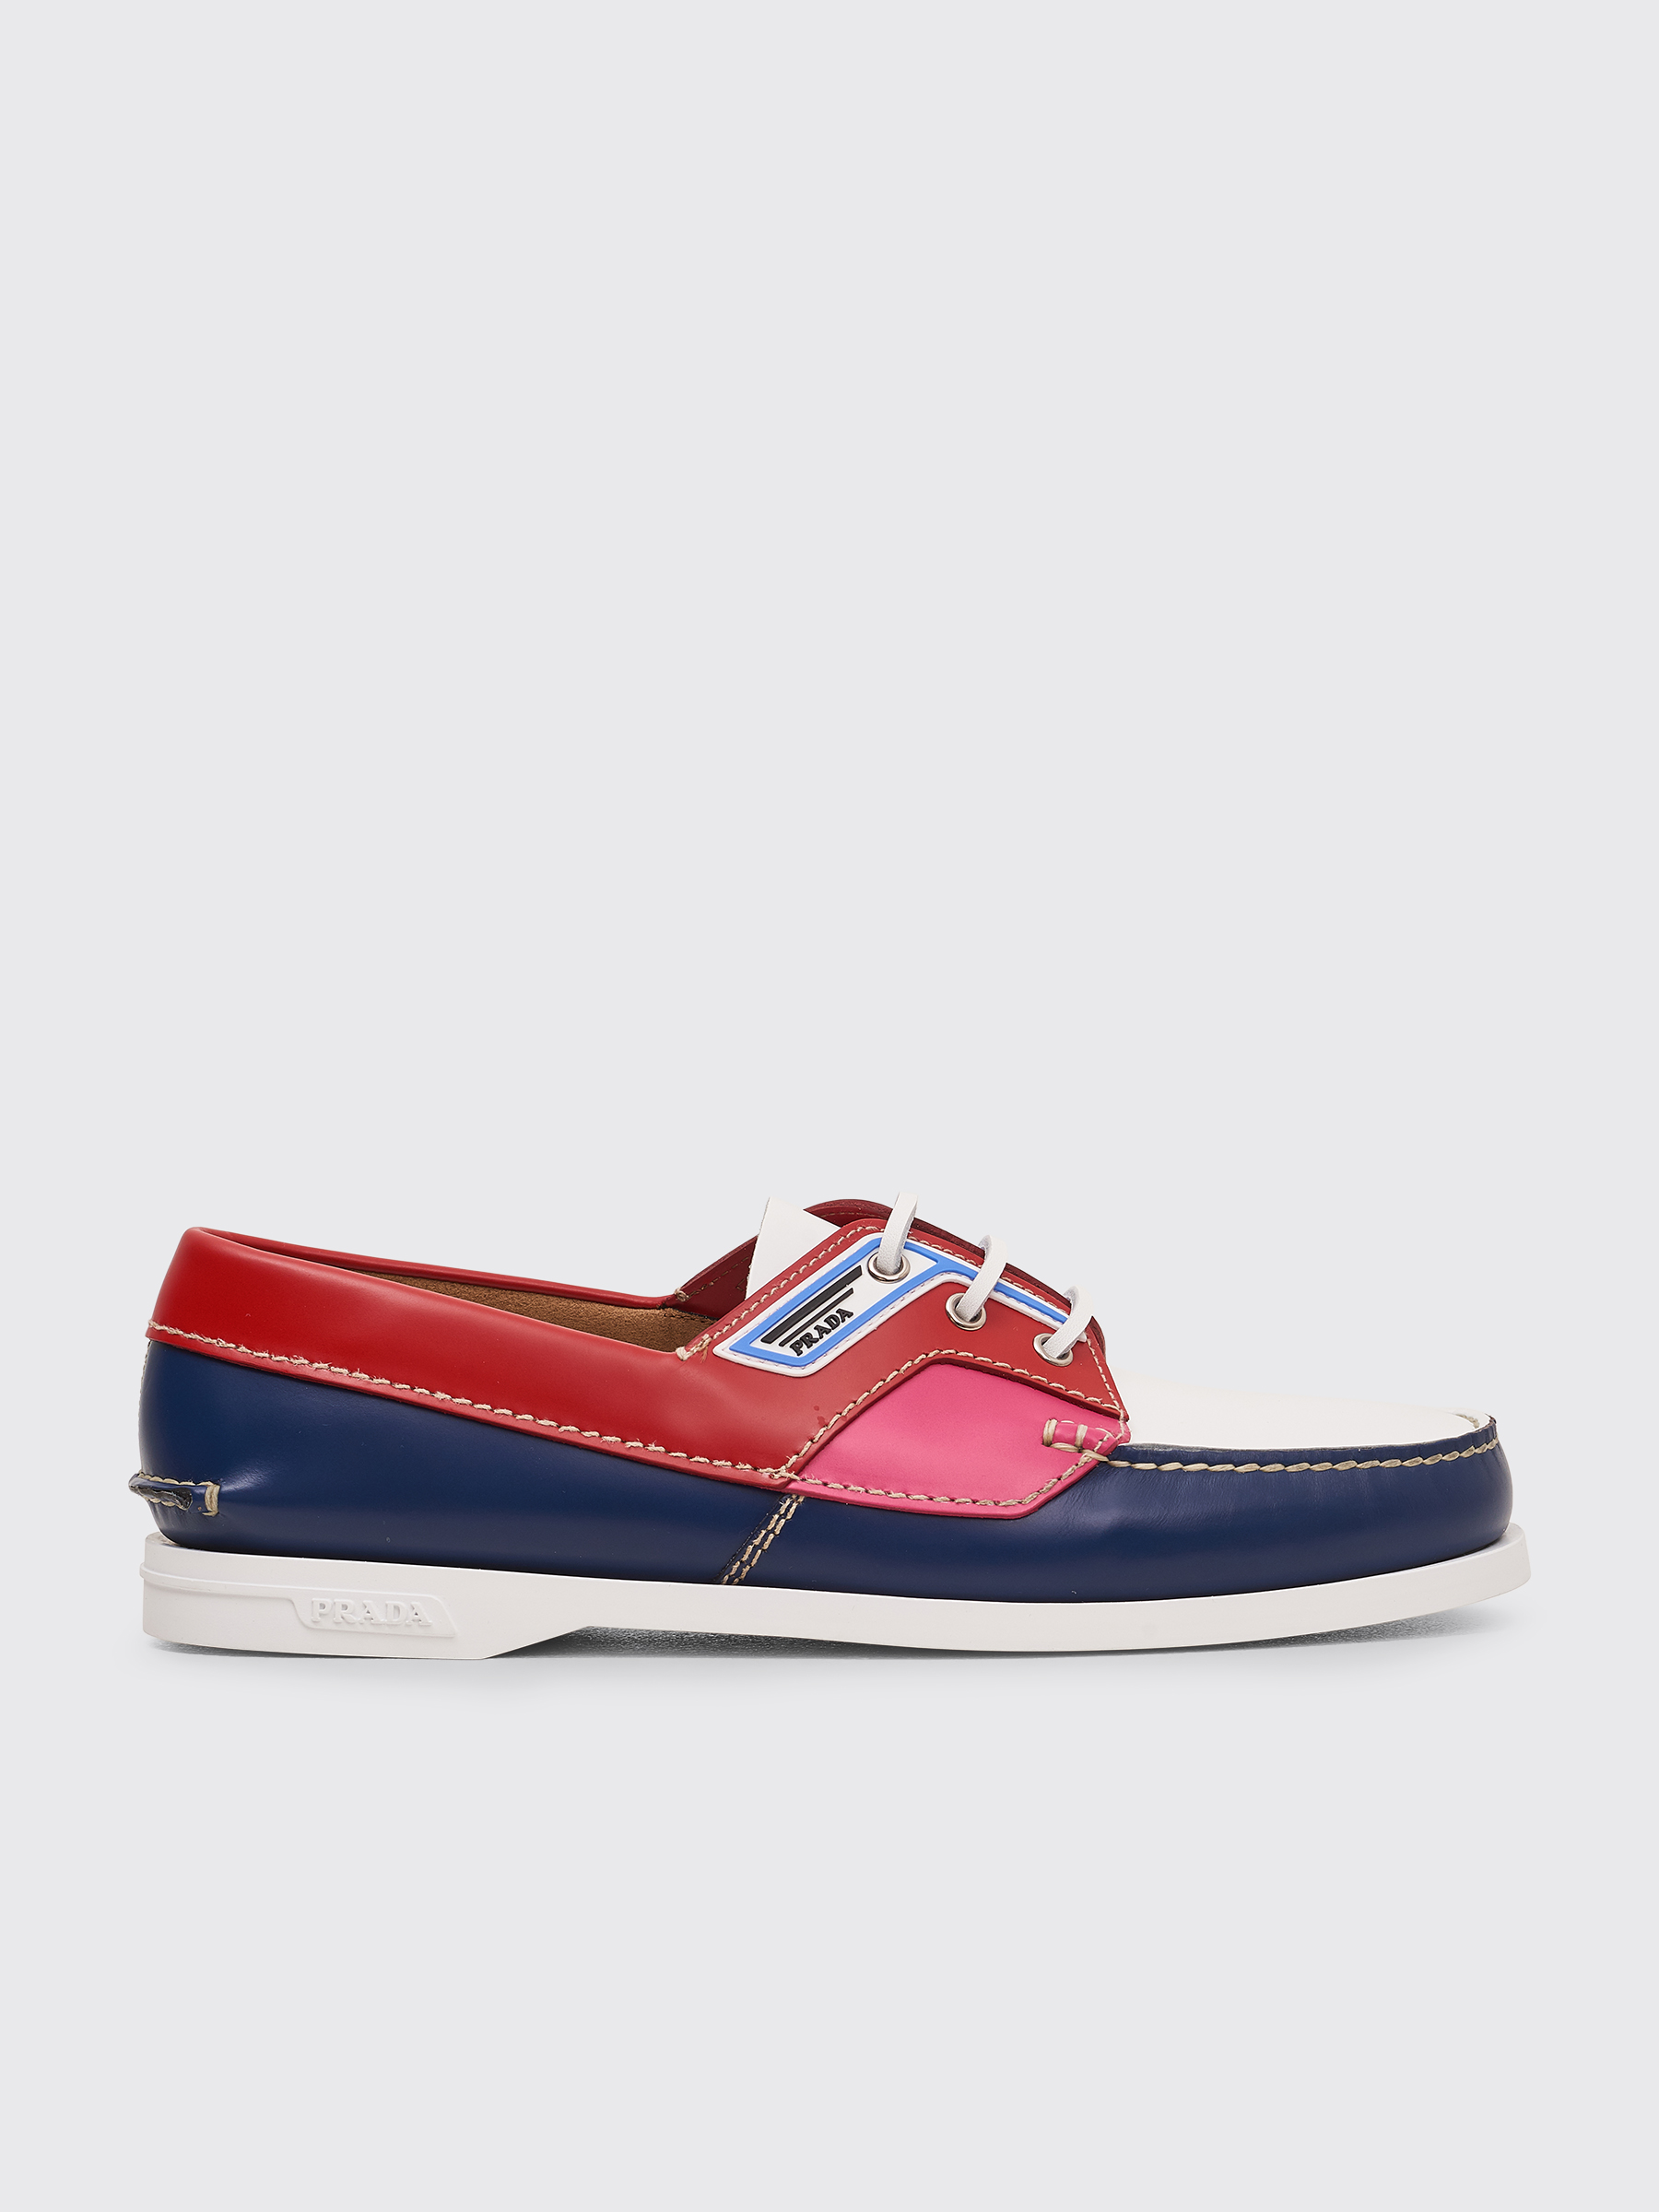 prada sailing shoes